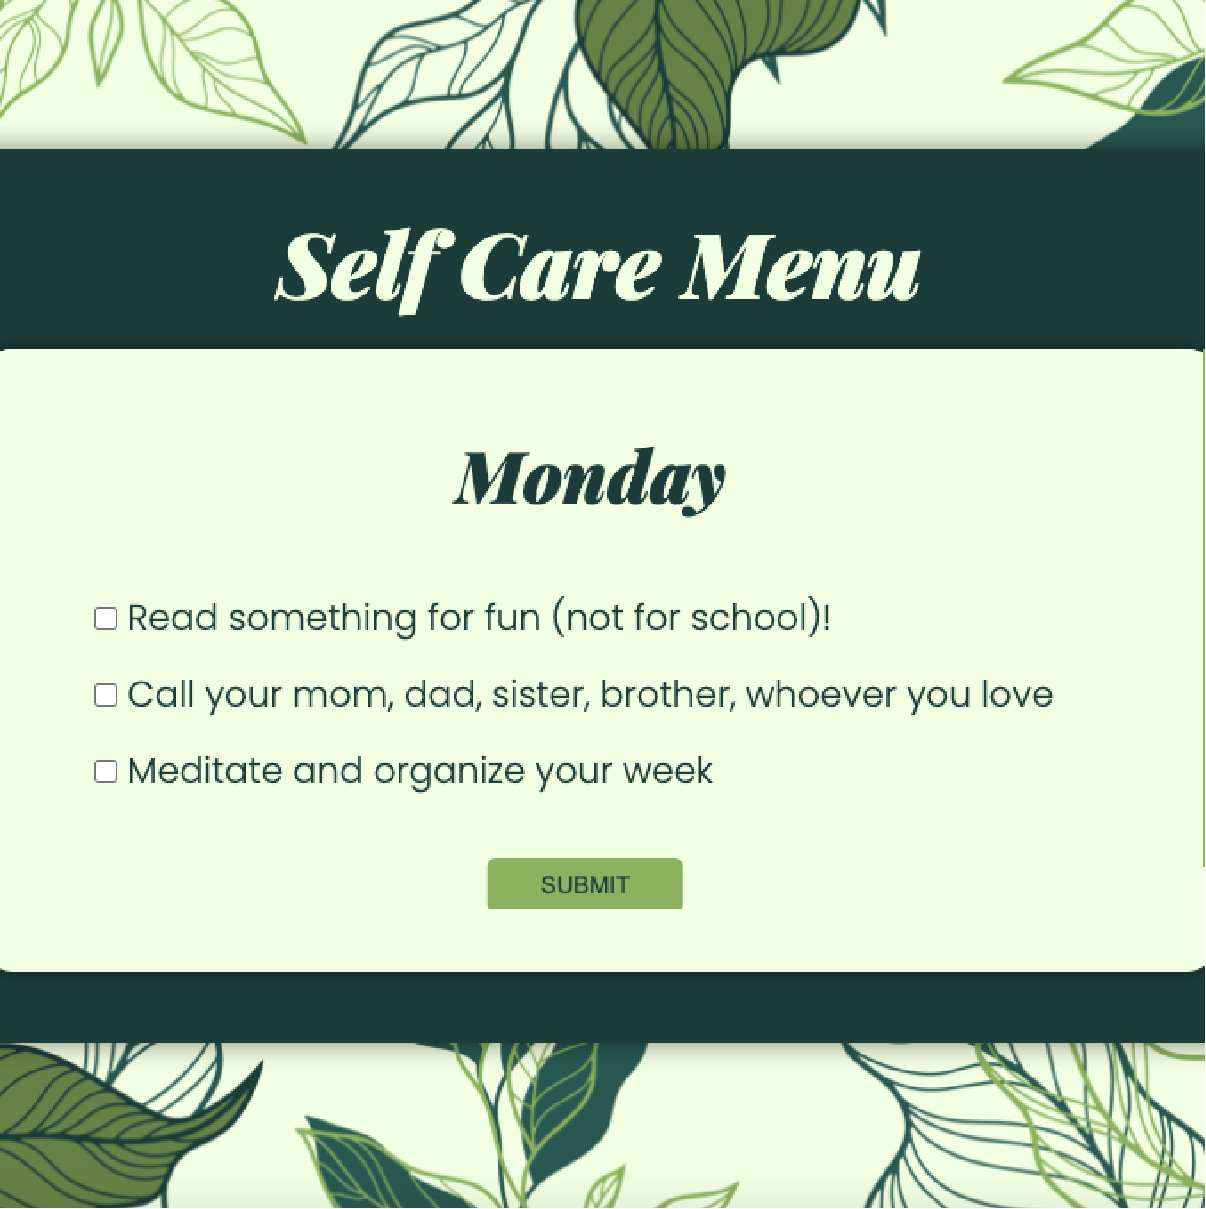 Link to Self Care Menu Website